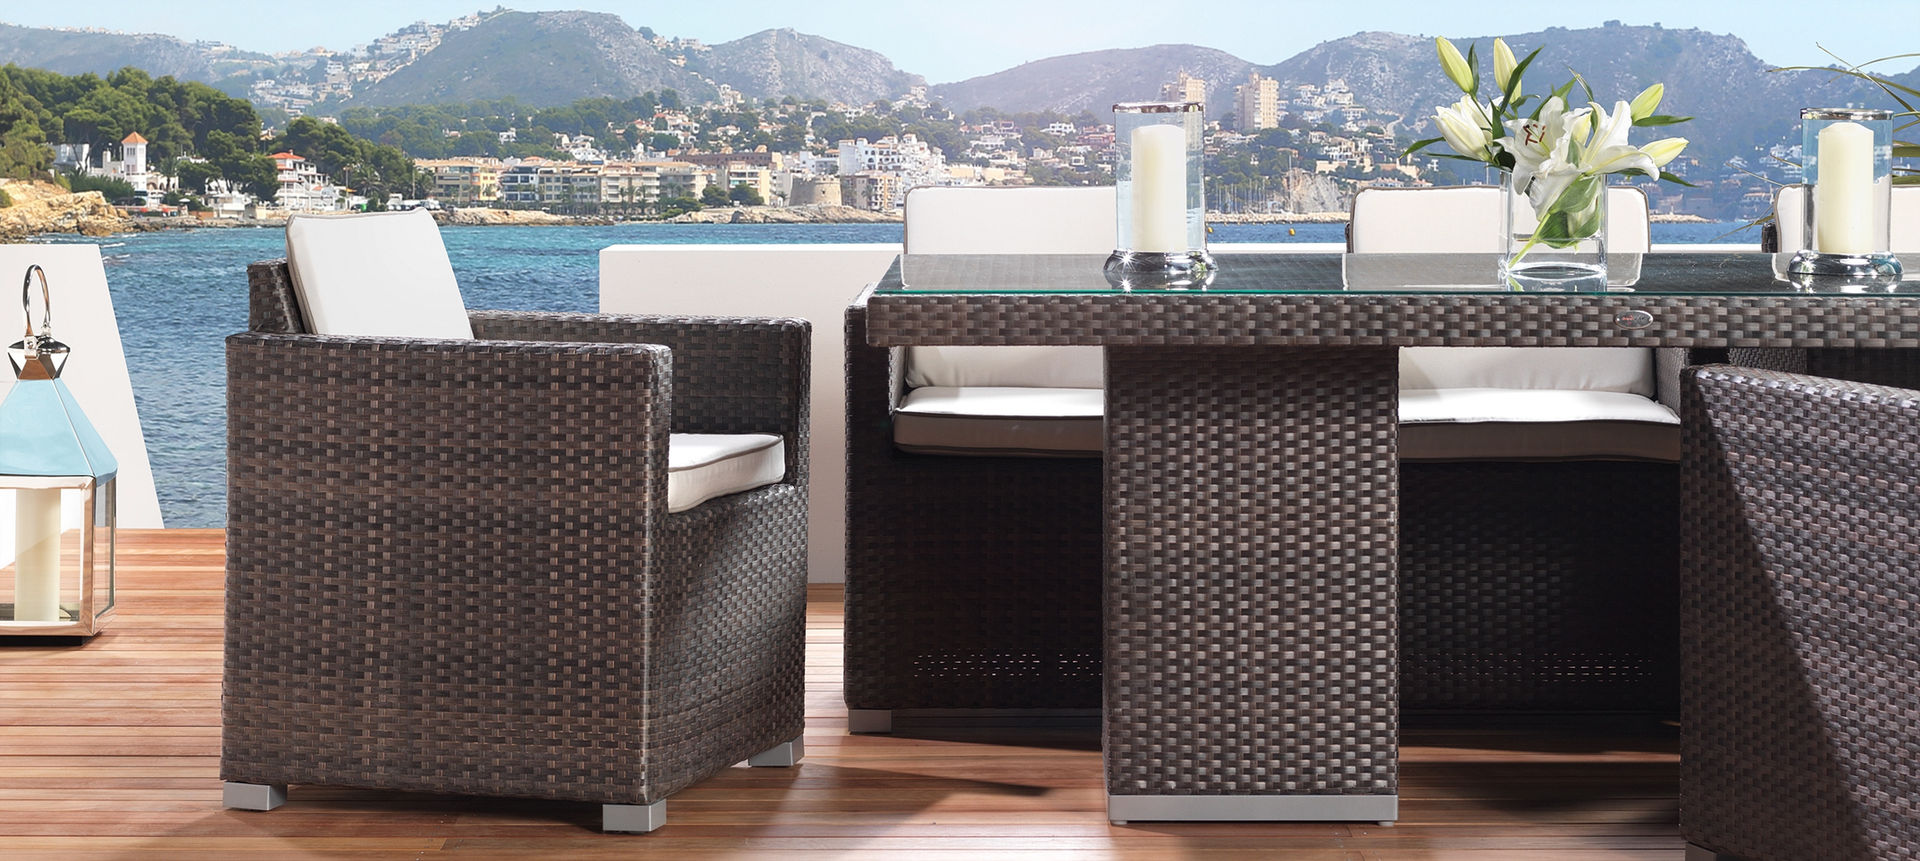 LuxDeco - The Riviera Collection - Dining Table LuxDeco Balcone, Veranda & Terrazza in stile moderno Rattan / Vimini Turchese Mobili